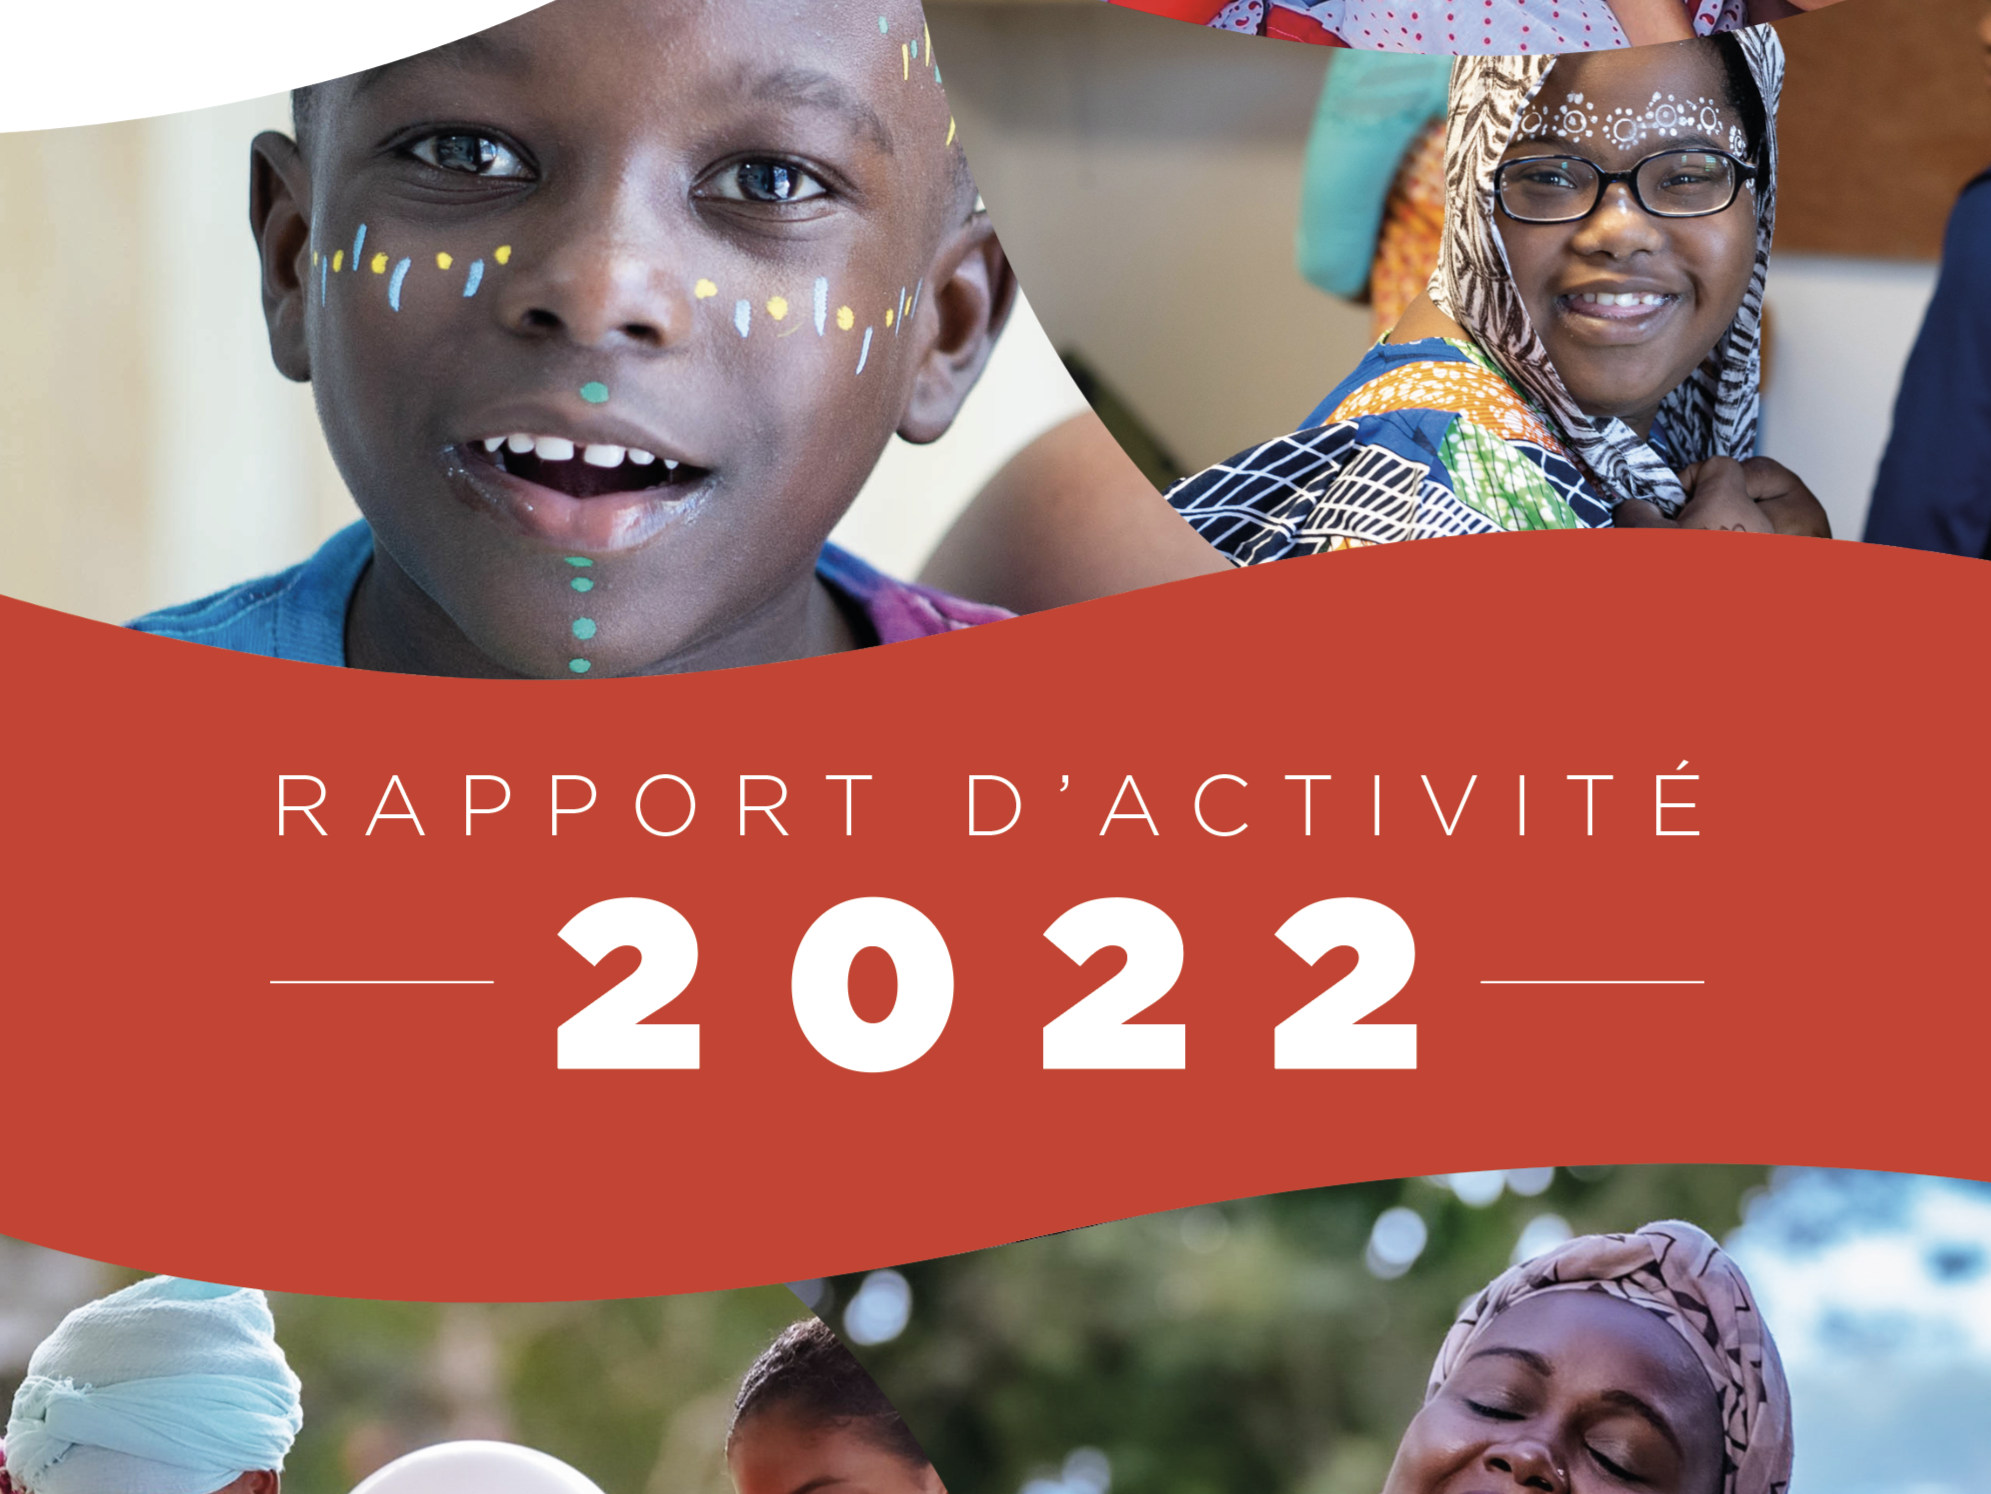 LE RAPPORT D’ACTIVITÉ 2022 EST DISPONIBLE !